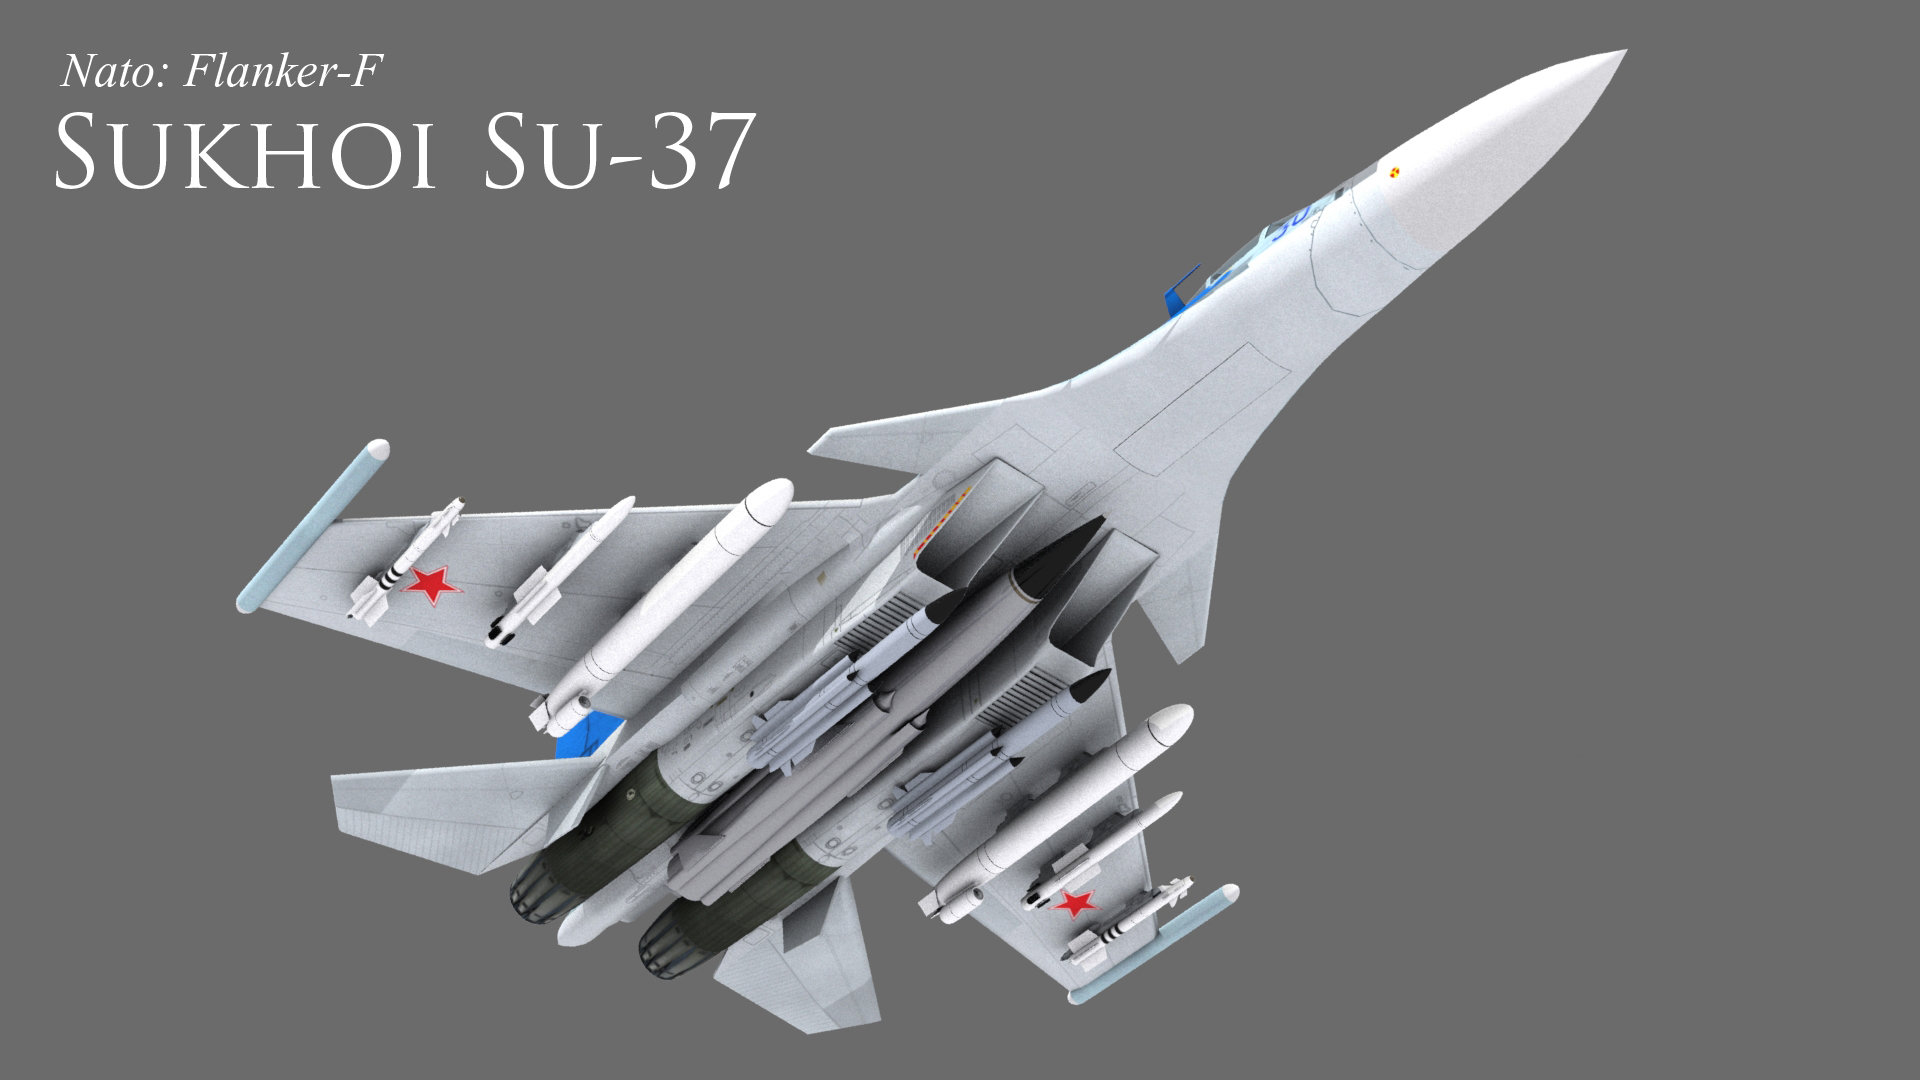 Cú lòe ngoạn mục của Nga: Su-37 cực kỳ đặc biệt từng khiến Mỹ-NATO lạnh gáy, TG sửng sốt - Ảnh 4.